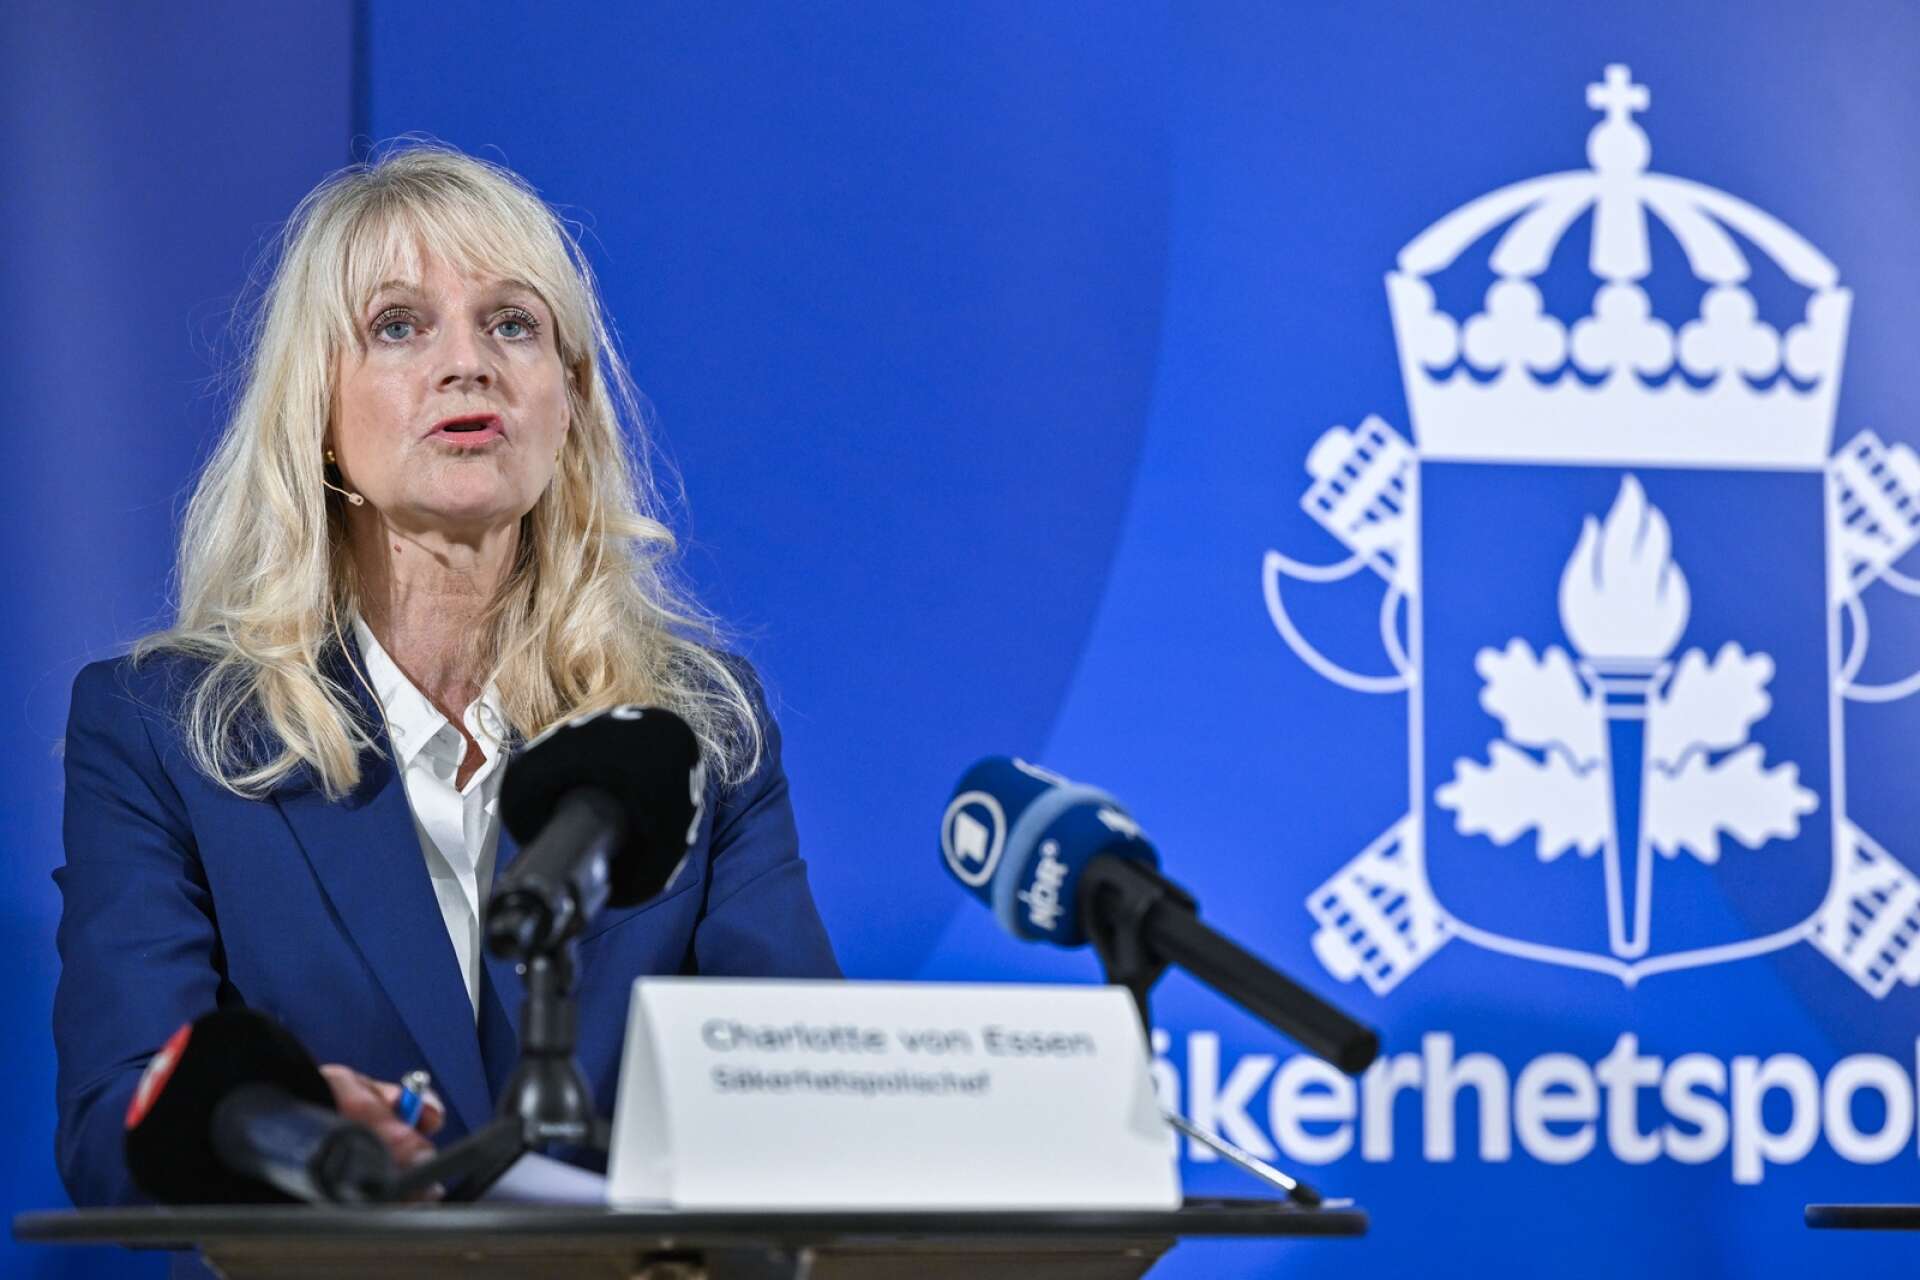 Säkerhetspolischef Charlotte von Essen vid en pressträff hos Säkerhetspolisen med anledning av det försämrade säkerhetsläget i Sverige.